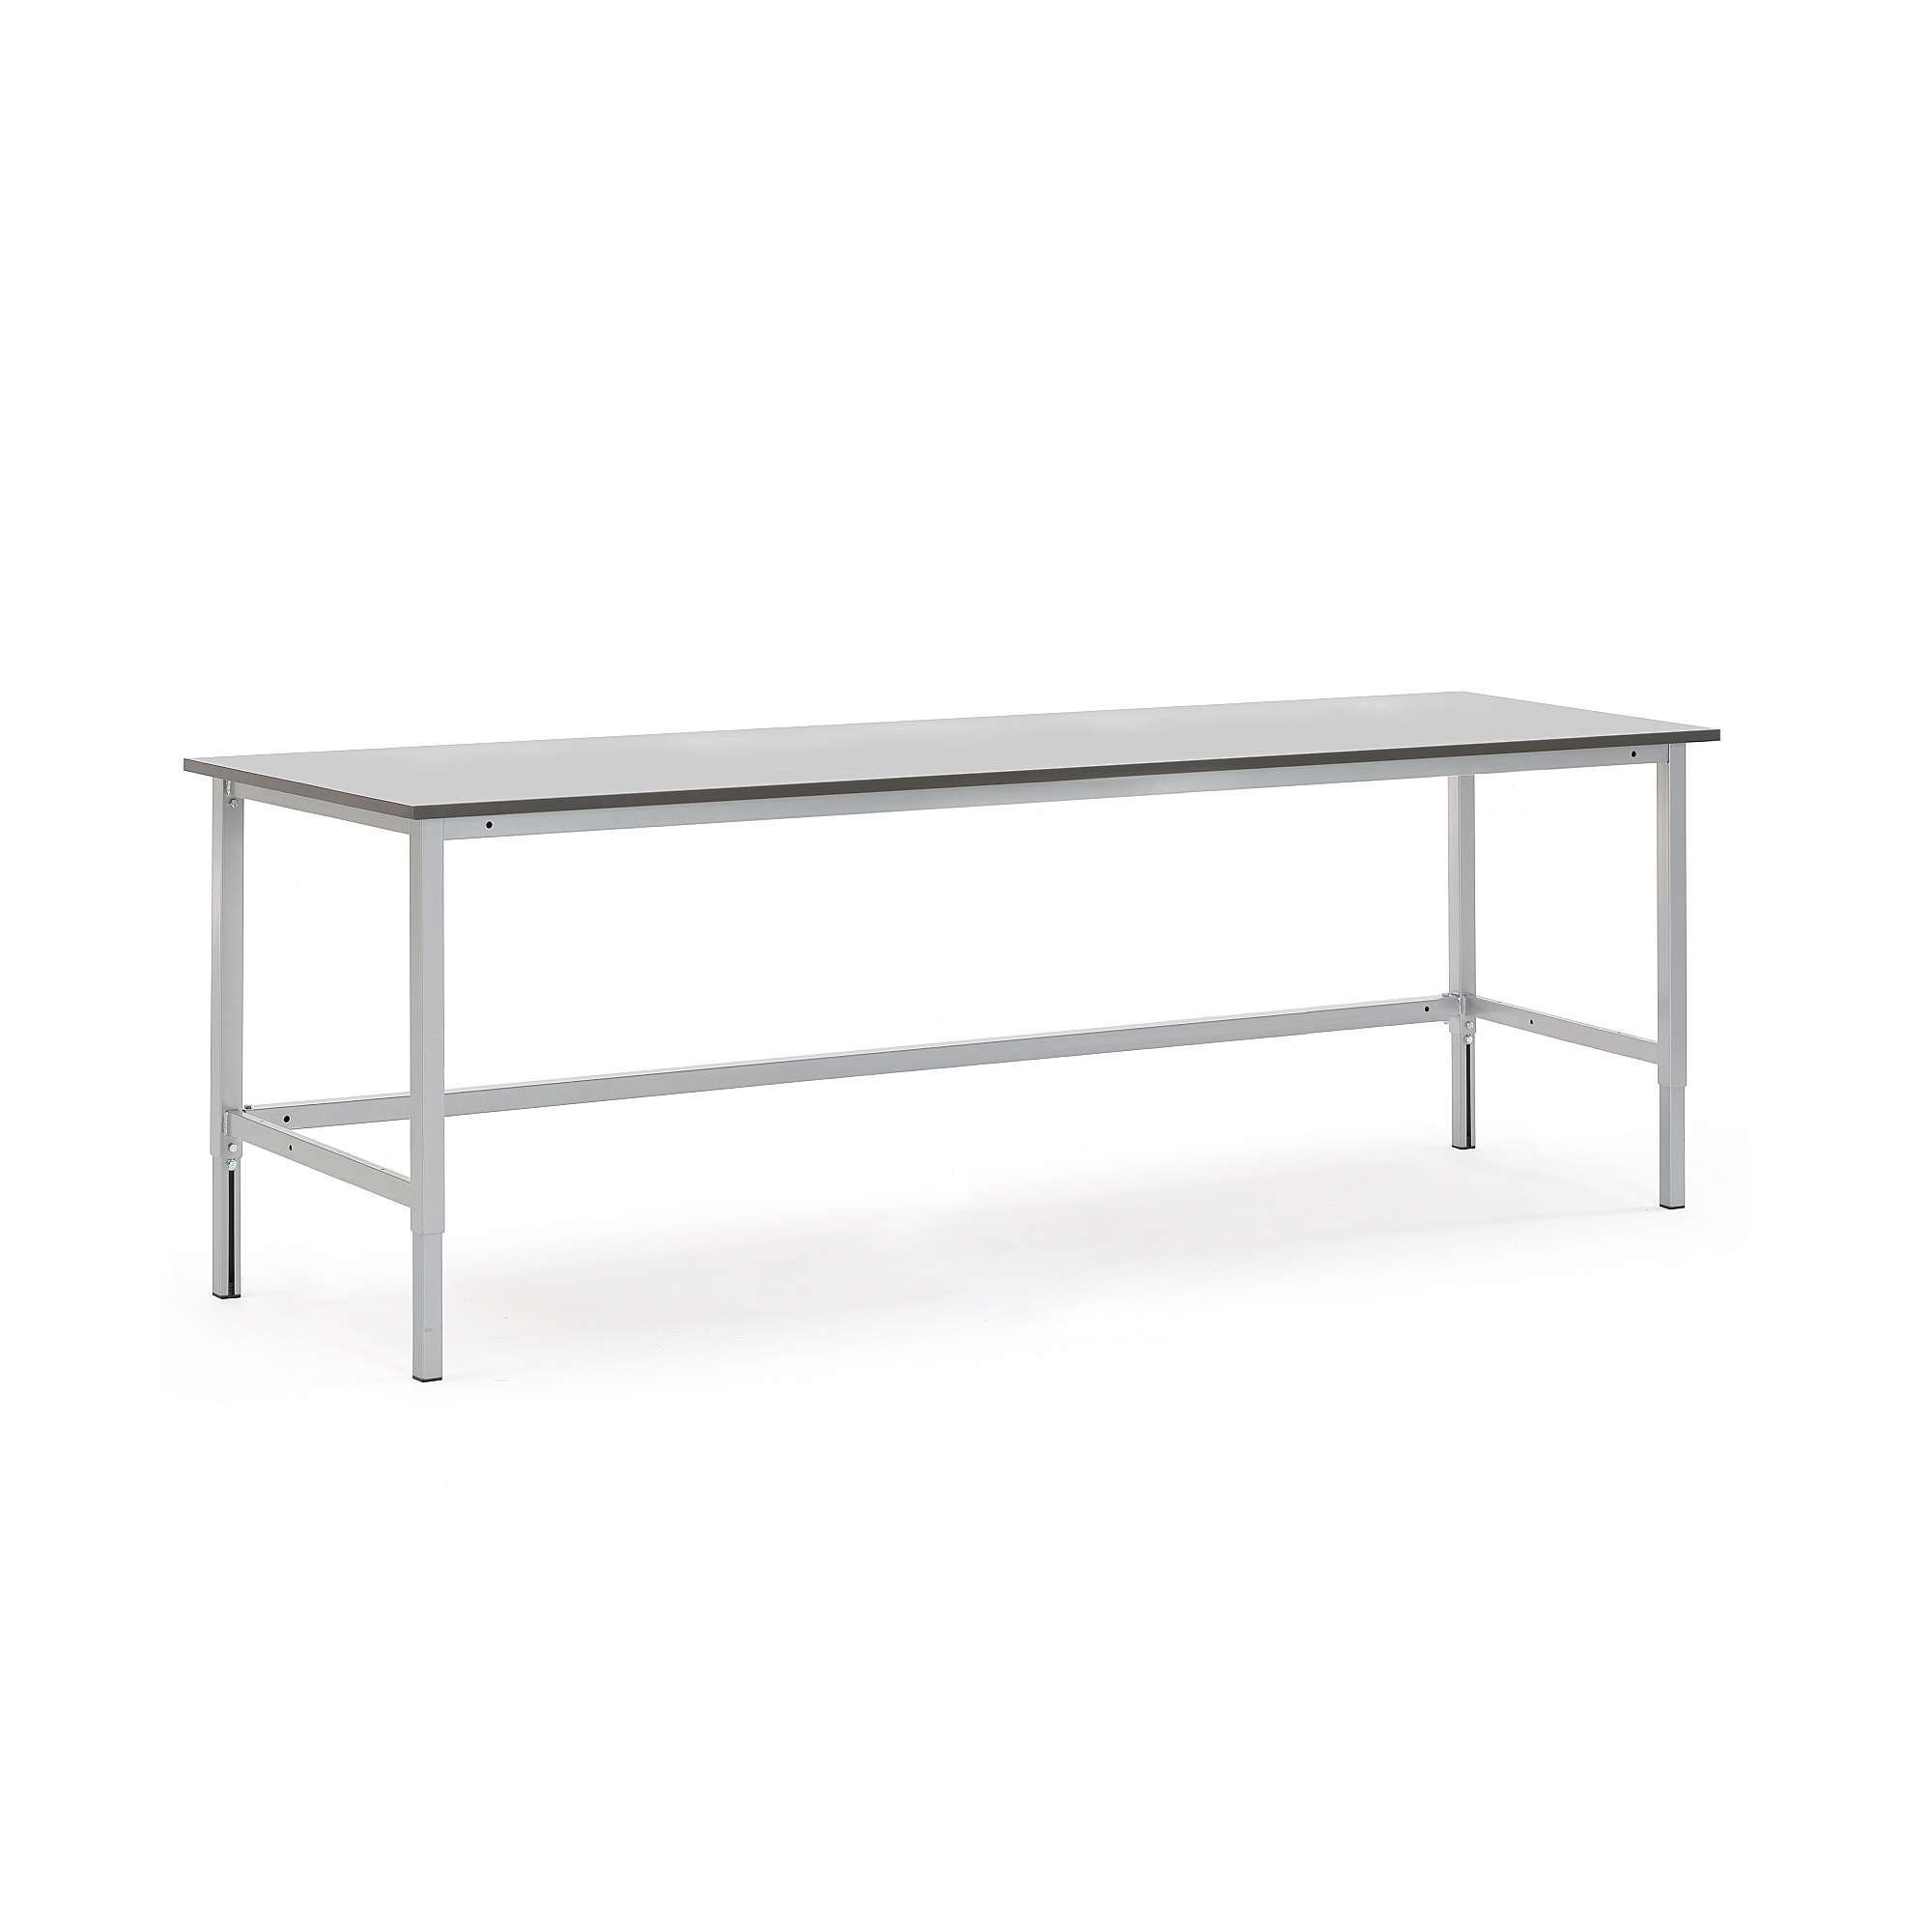 Pracovní stůl MOTION, 2500x800 mm, šedá